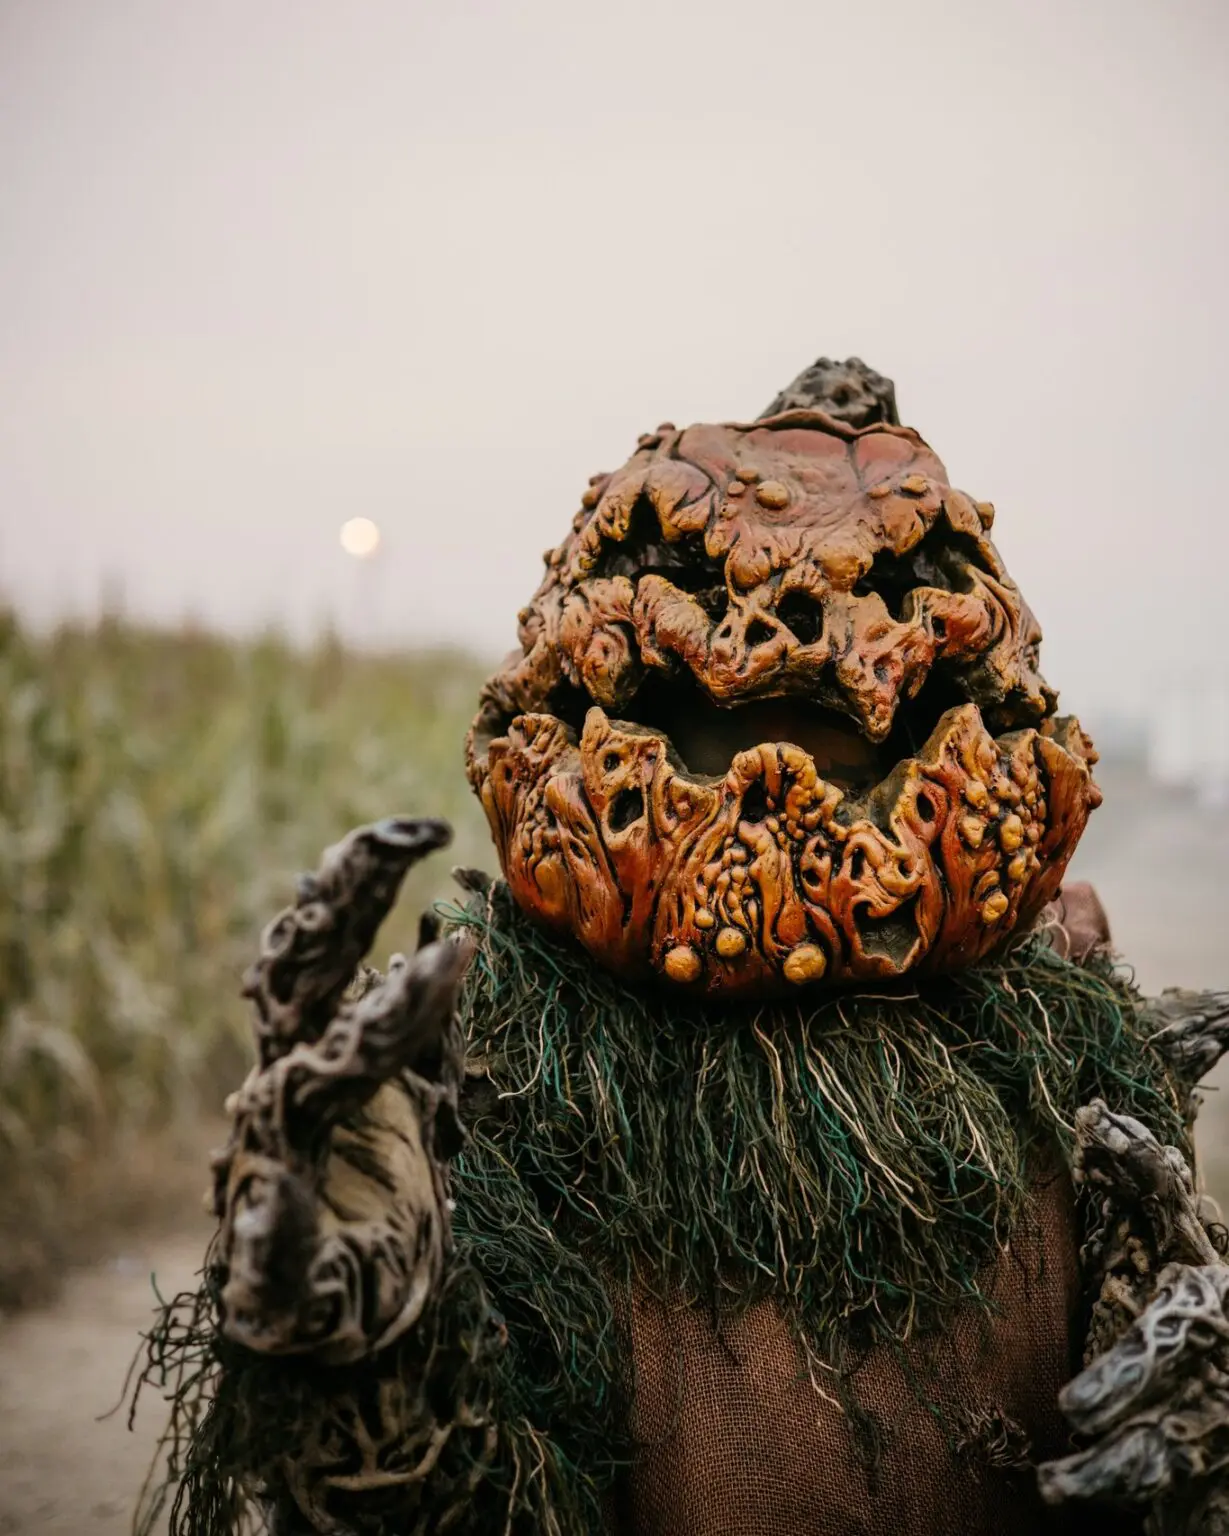 A spooky pumpkin head haunts a smoky corn trail